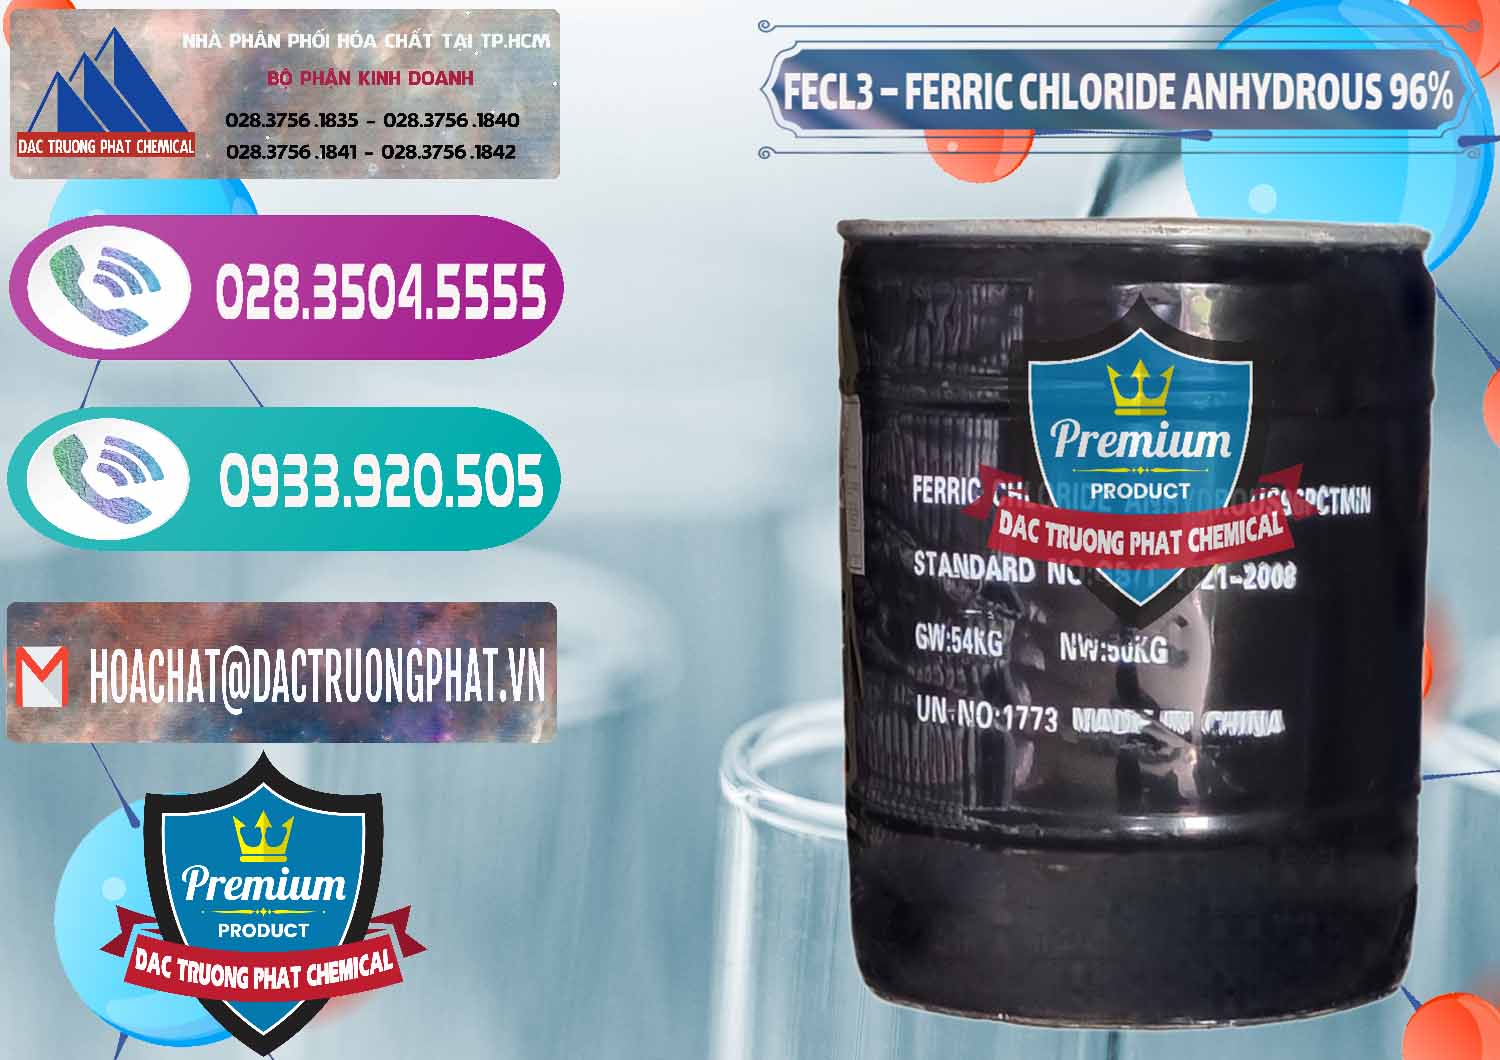 Đơn vị nhập khẩu ( bán ) FECL3 – Ferric Chloride Anhydrous 96% Trung Quốc China - 0065 - Cty chuyên kinh doanh - phân phối hóa chất tại TP.HCM - hoachatxulynuoc.com